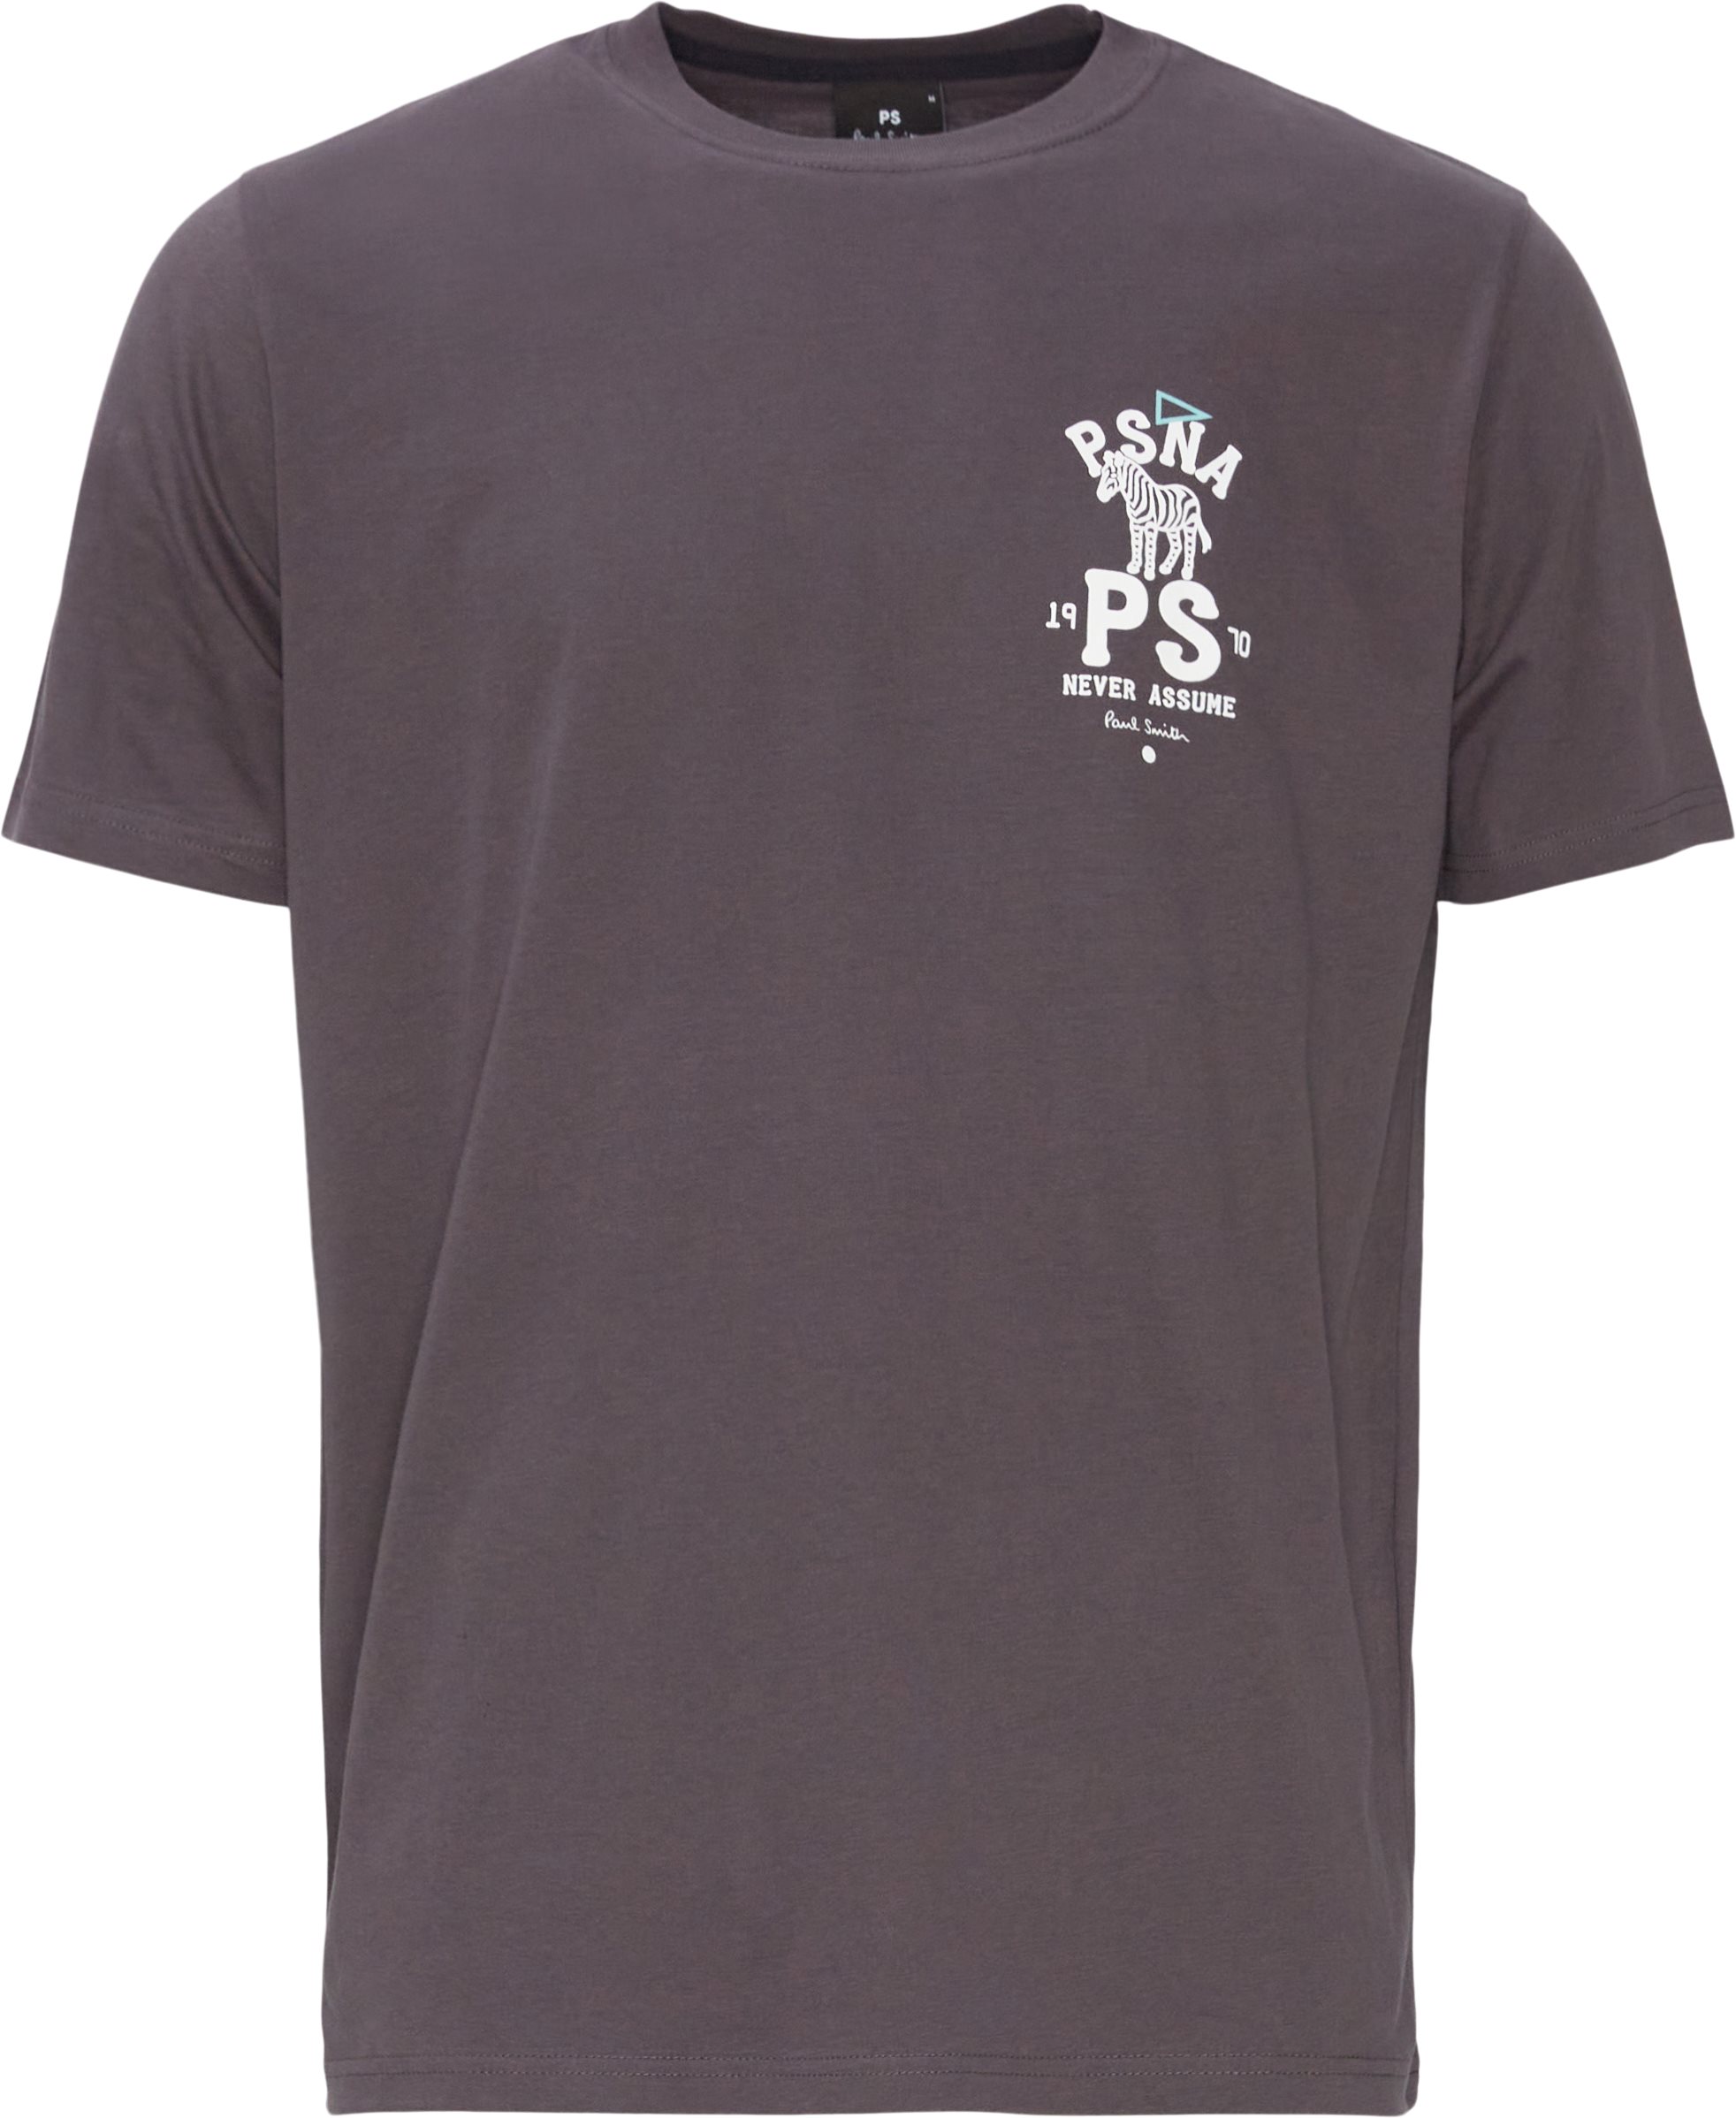 Zebra T-shirt - T-shirts - Regular fit - Grå